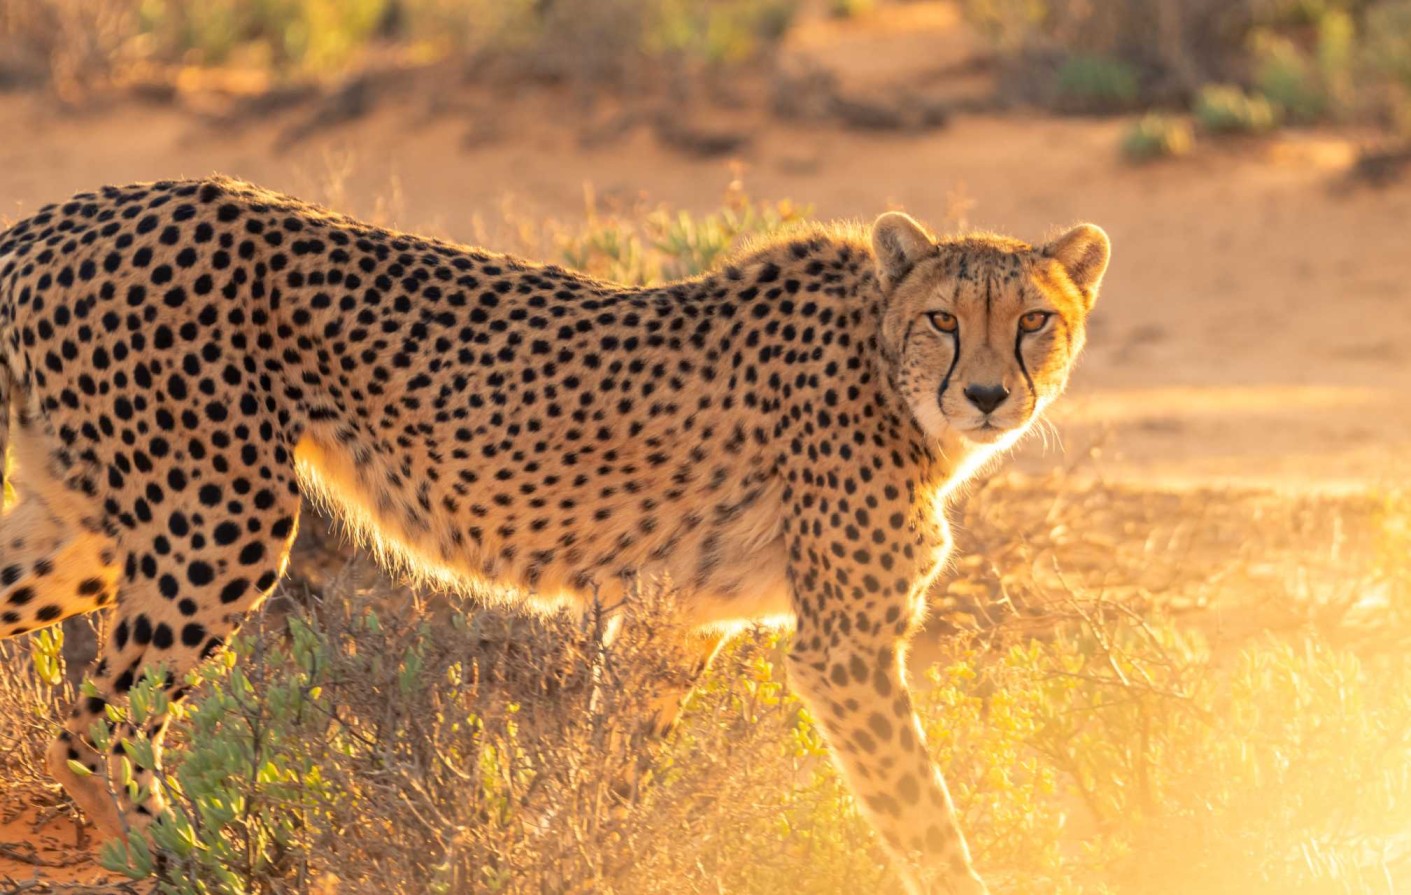 what do Cheetahs eat